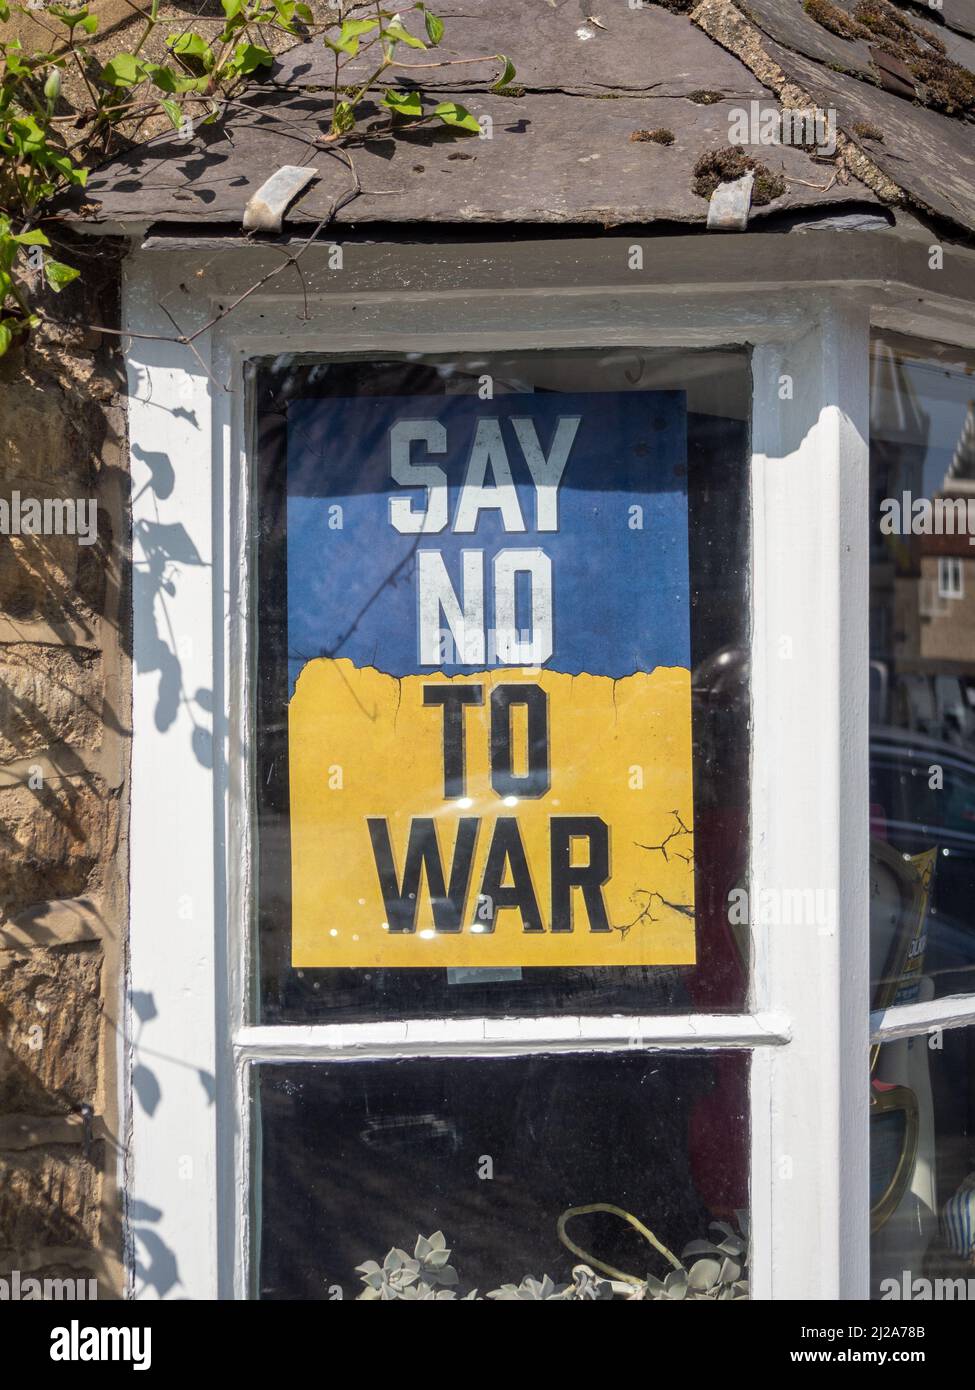 Dire No alla guerra poster sui colori giallo e blu dell'Ucraina, in una finestra, Olney, Buckinghamshire, Regno Unito Foto Stock